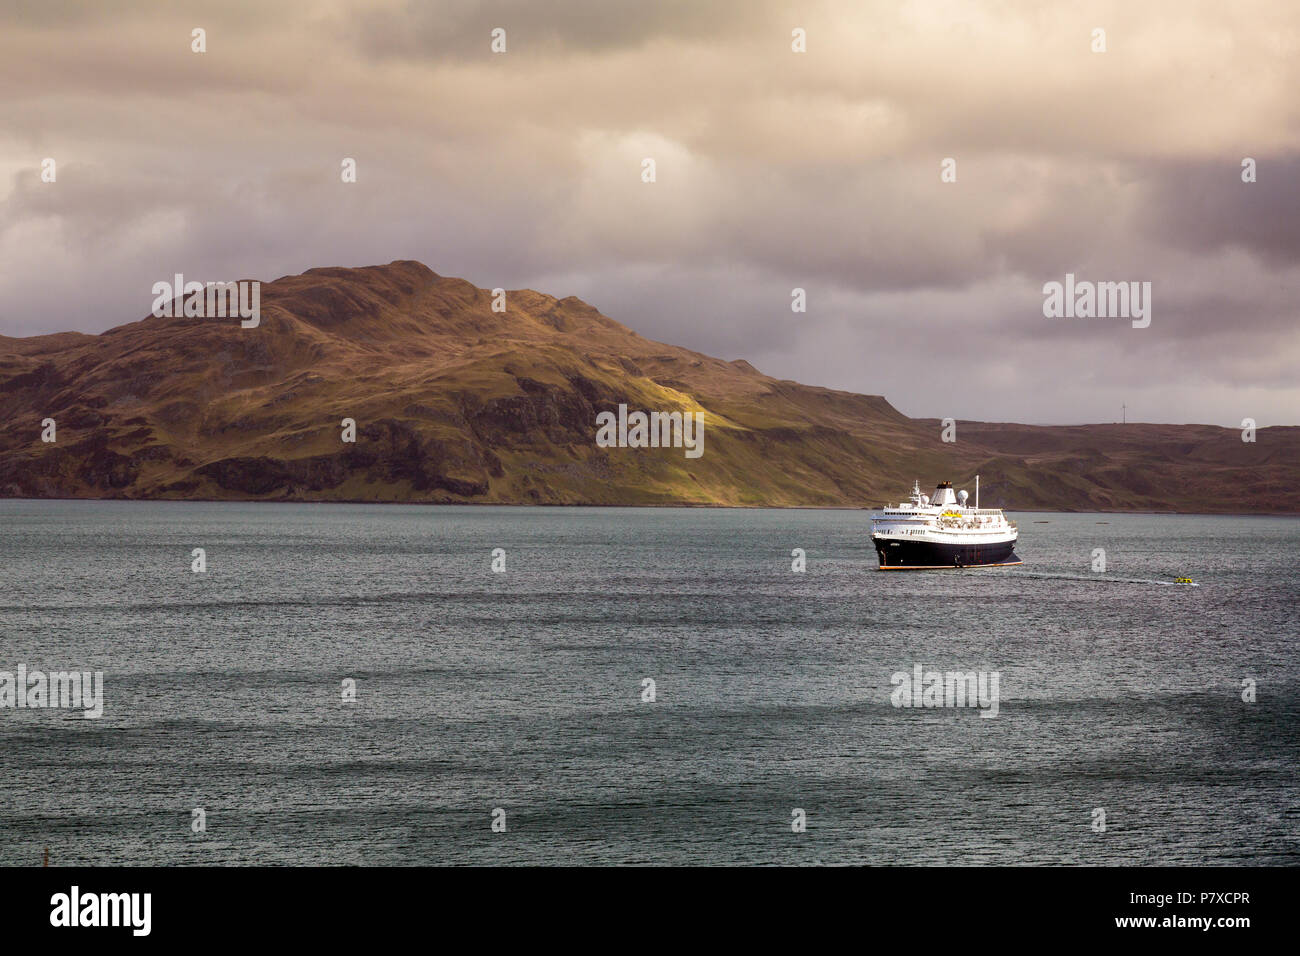 Das Kreuzfahrtschiff "Astoria" im Sound der Mull verankert, während seine Passagiere Tobermory, Isle of Mull, Argyll und Bute, Schottland, UK besuchen Sie Stockfoto